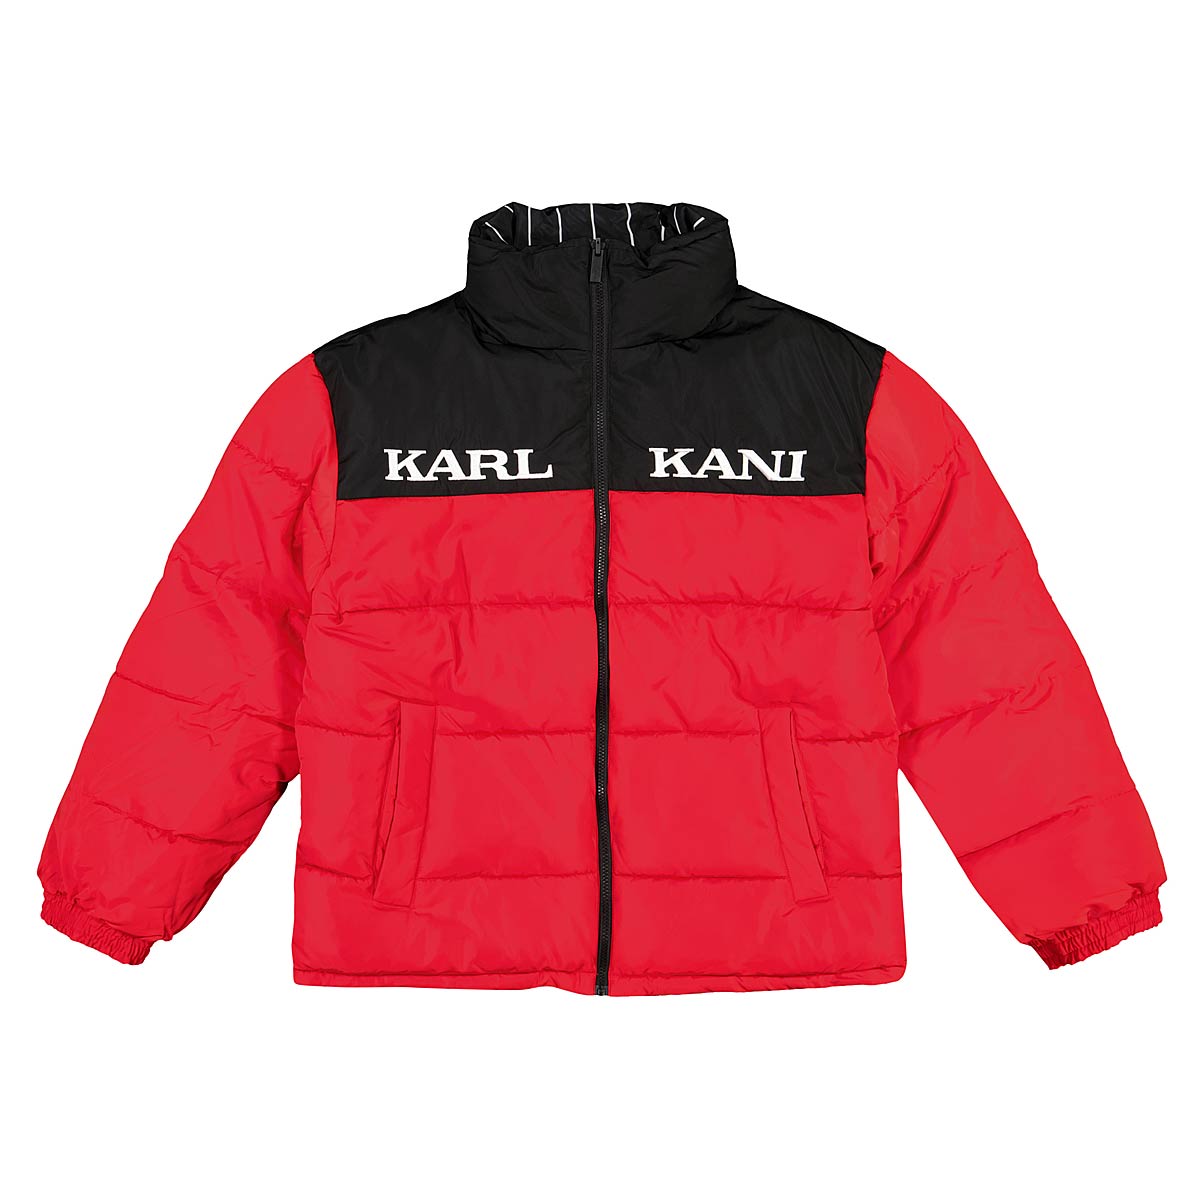 Karl Kani Retro Block Reversible Puffer Jacket, Red/Black/White